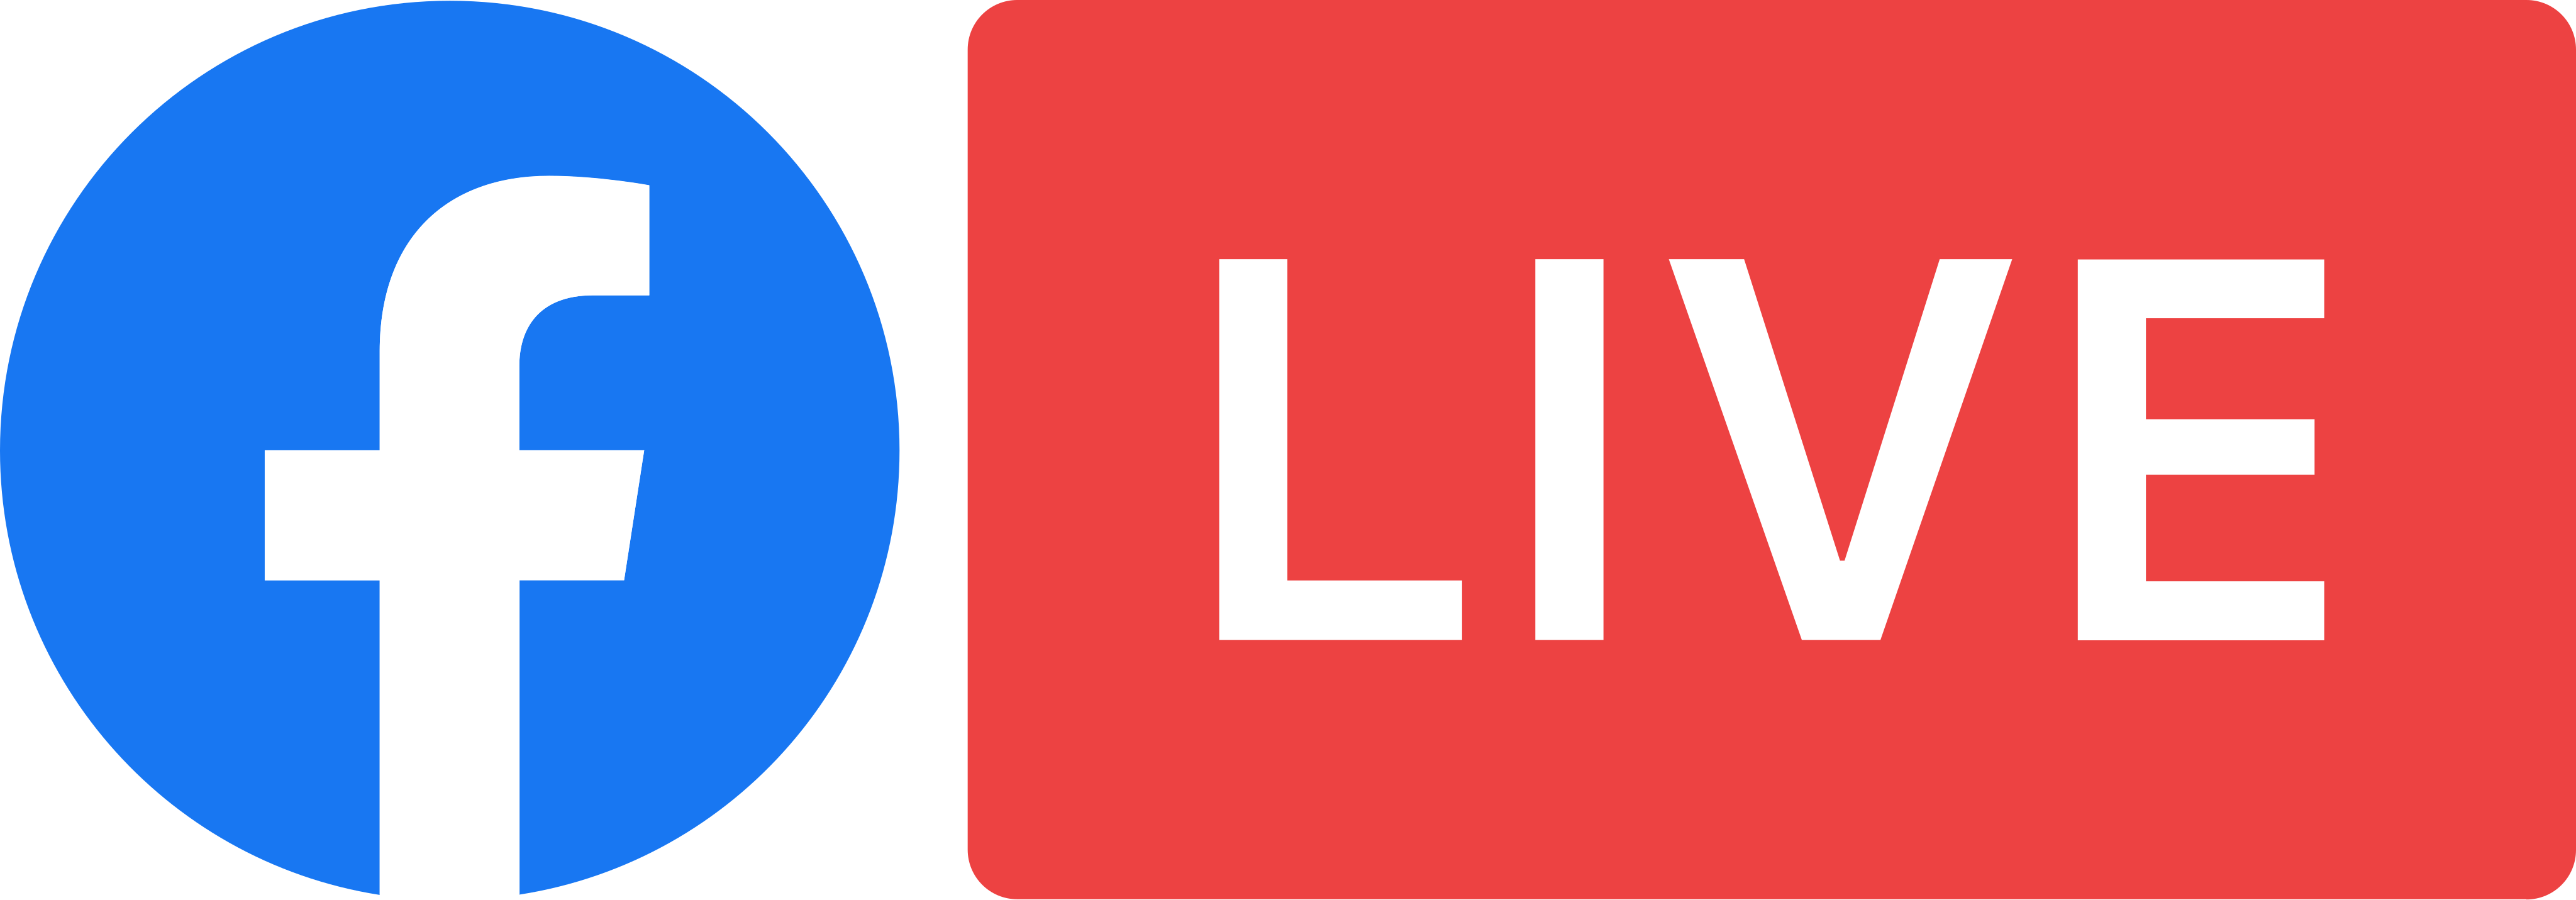 facebook-live-logo.png